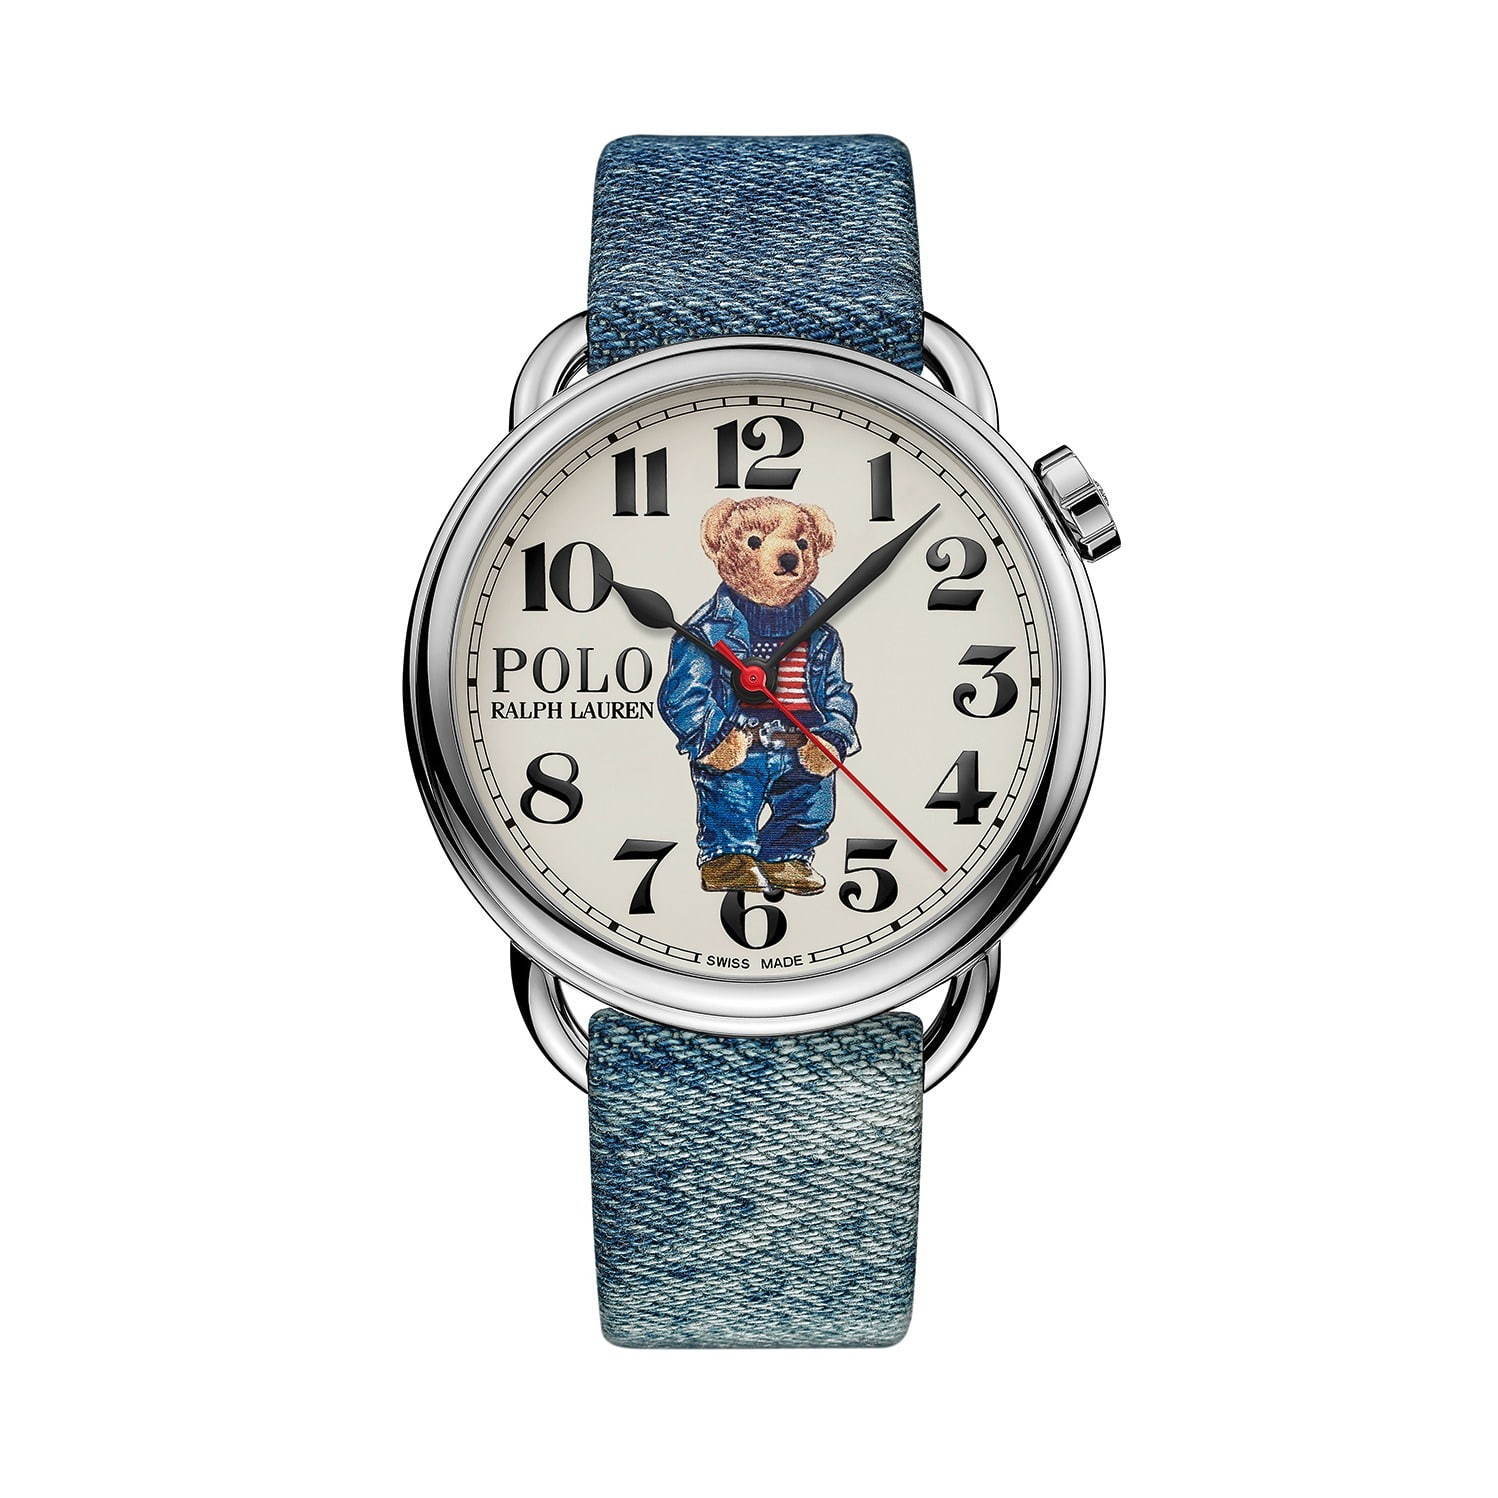 ラルフ ローレン「ポロベア ウォッチ」の新作腕時計、デザイナー自身の